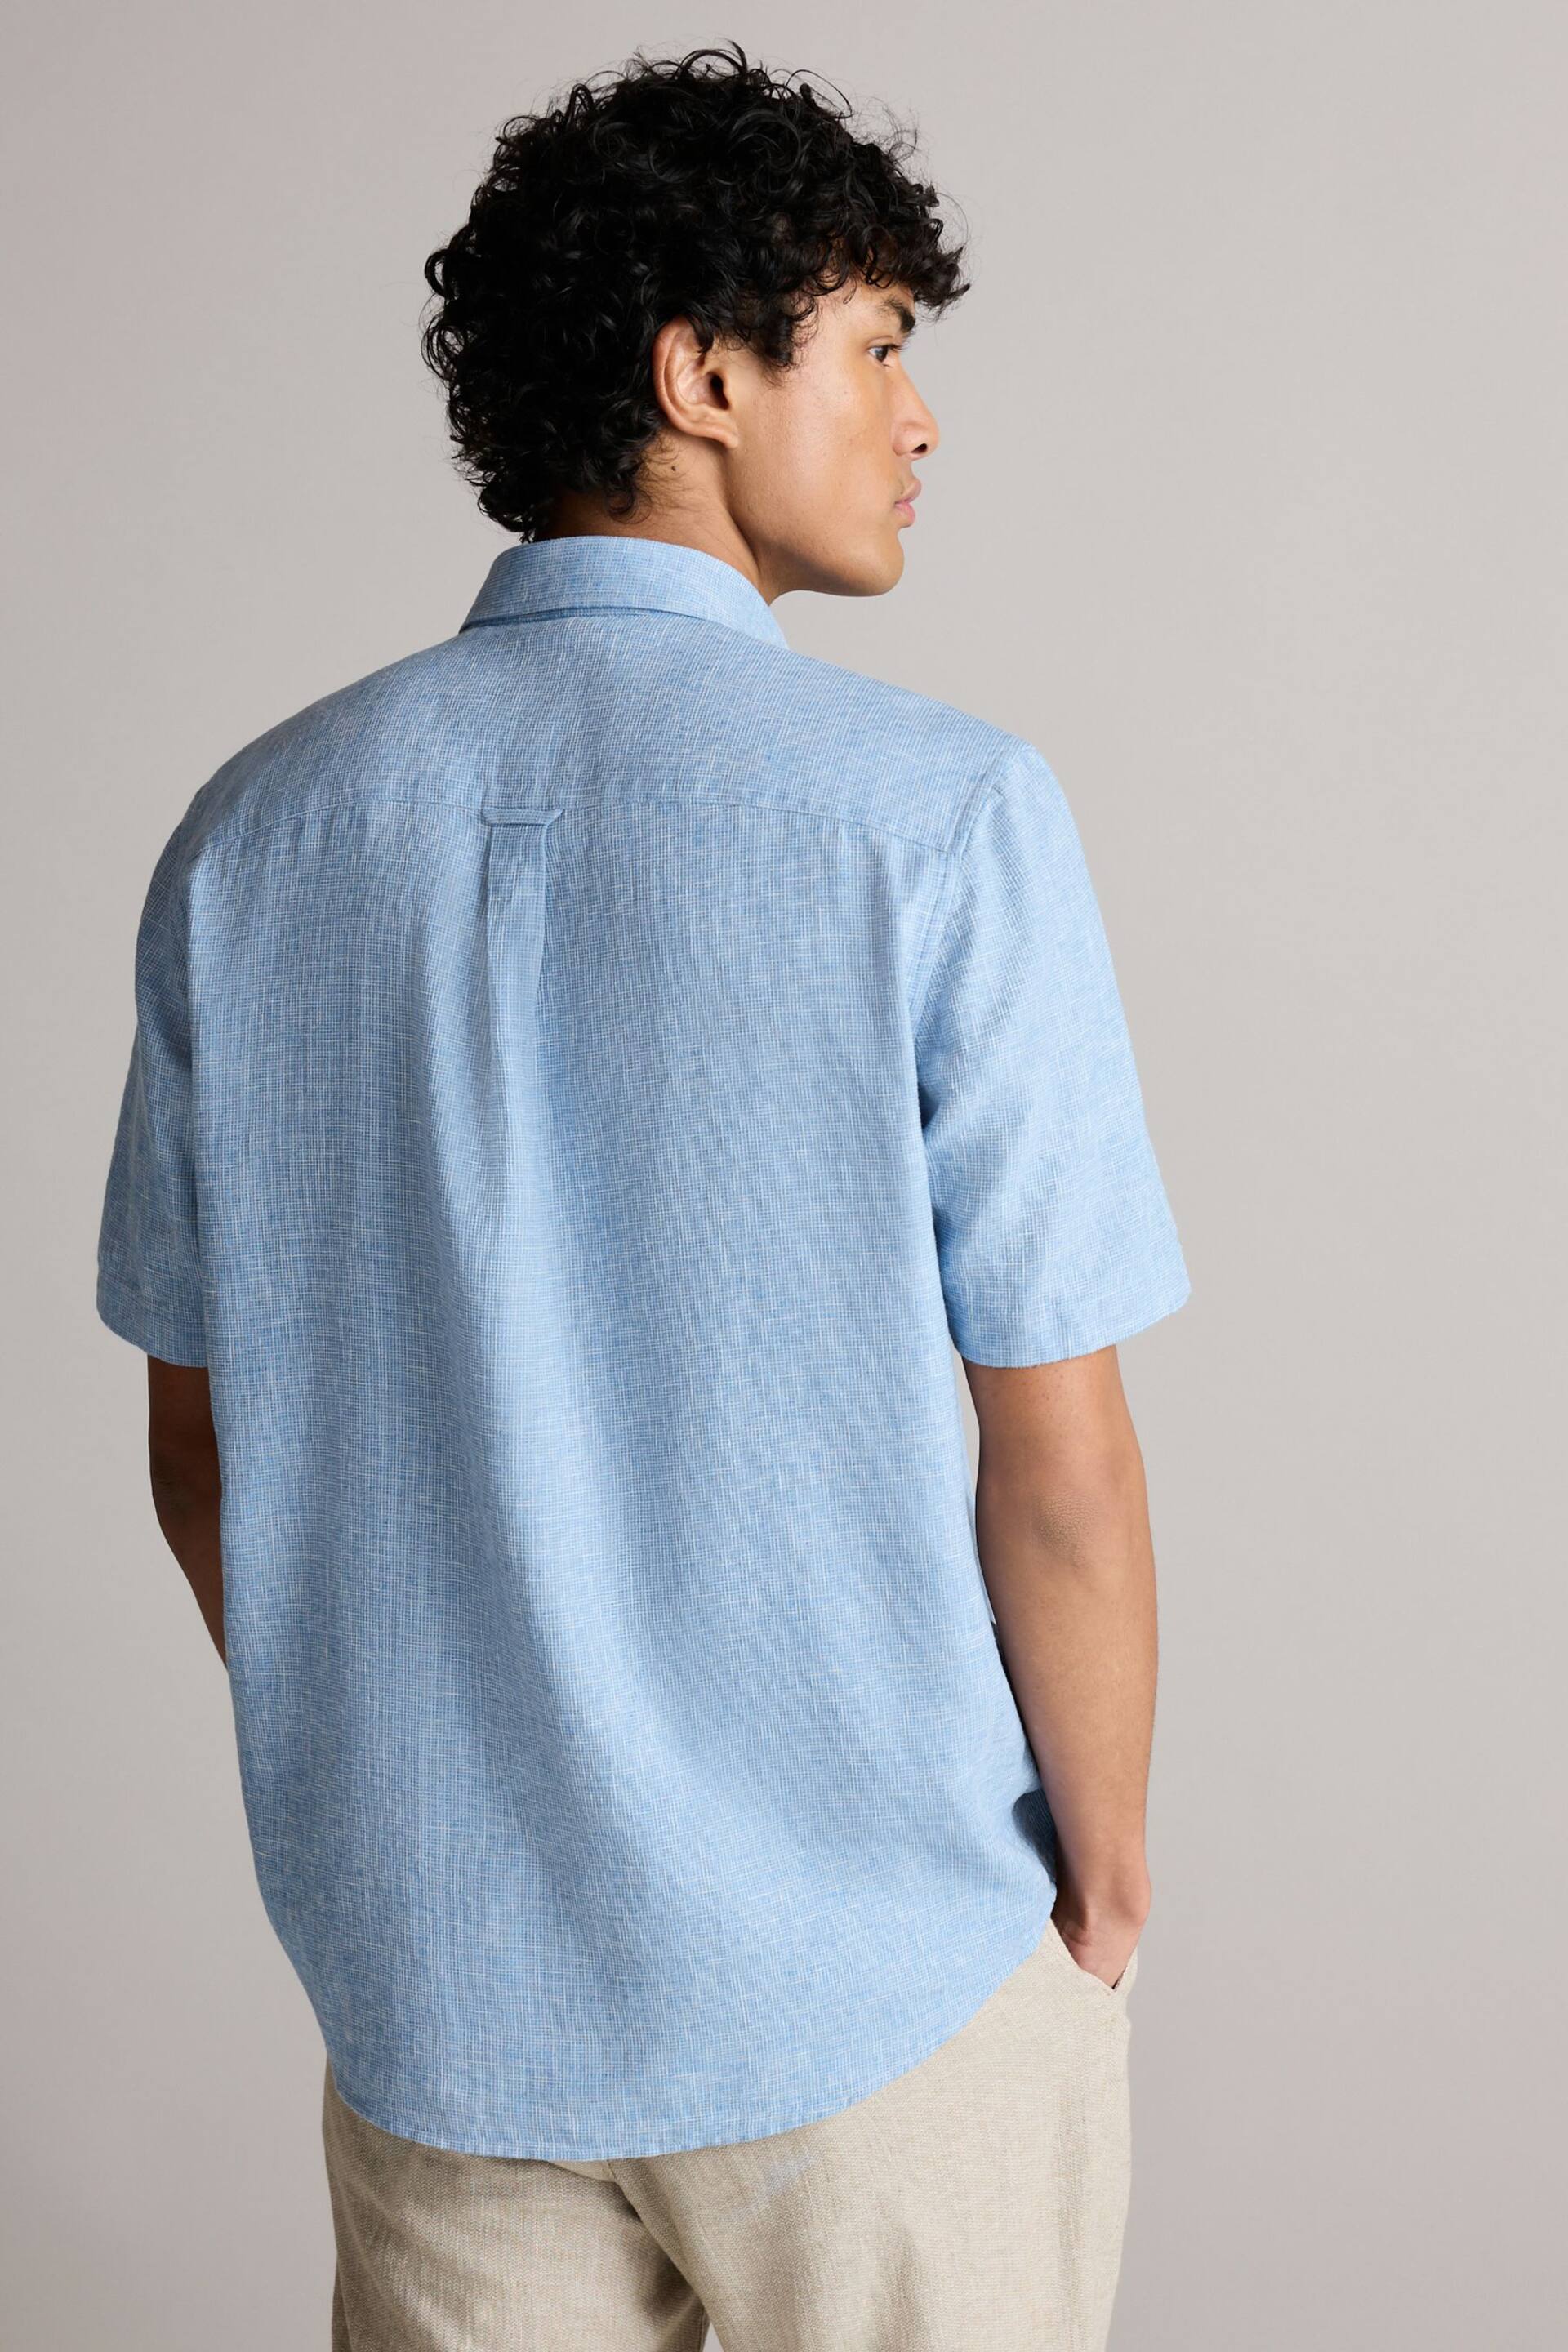 Blue Standard Collar Linen Blend Short Sleeve Shirt - Image 3 of 8